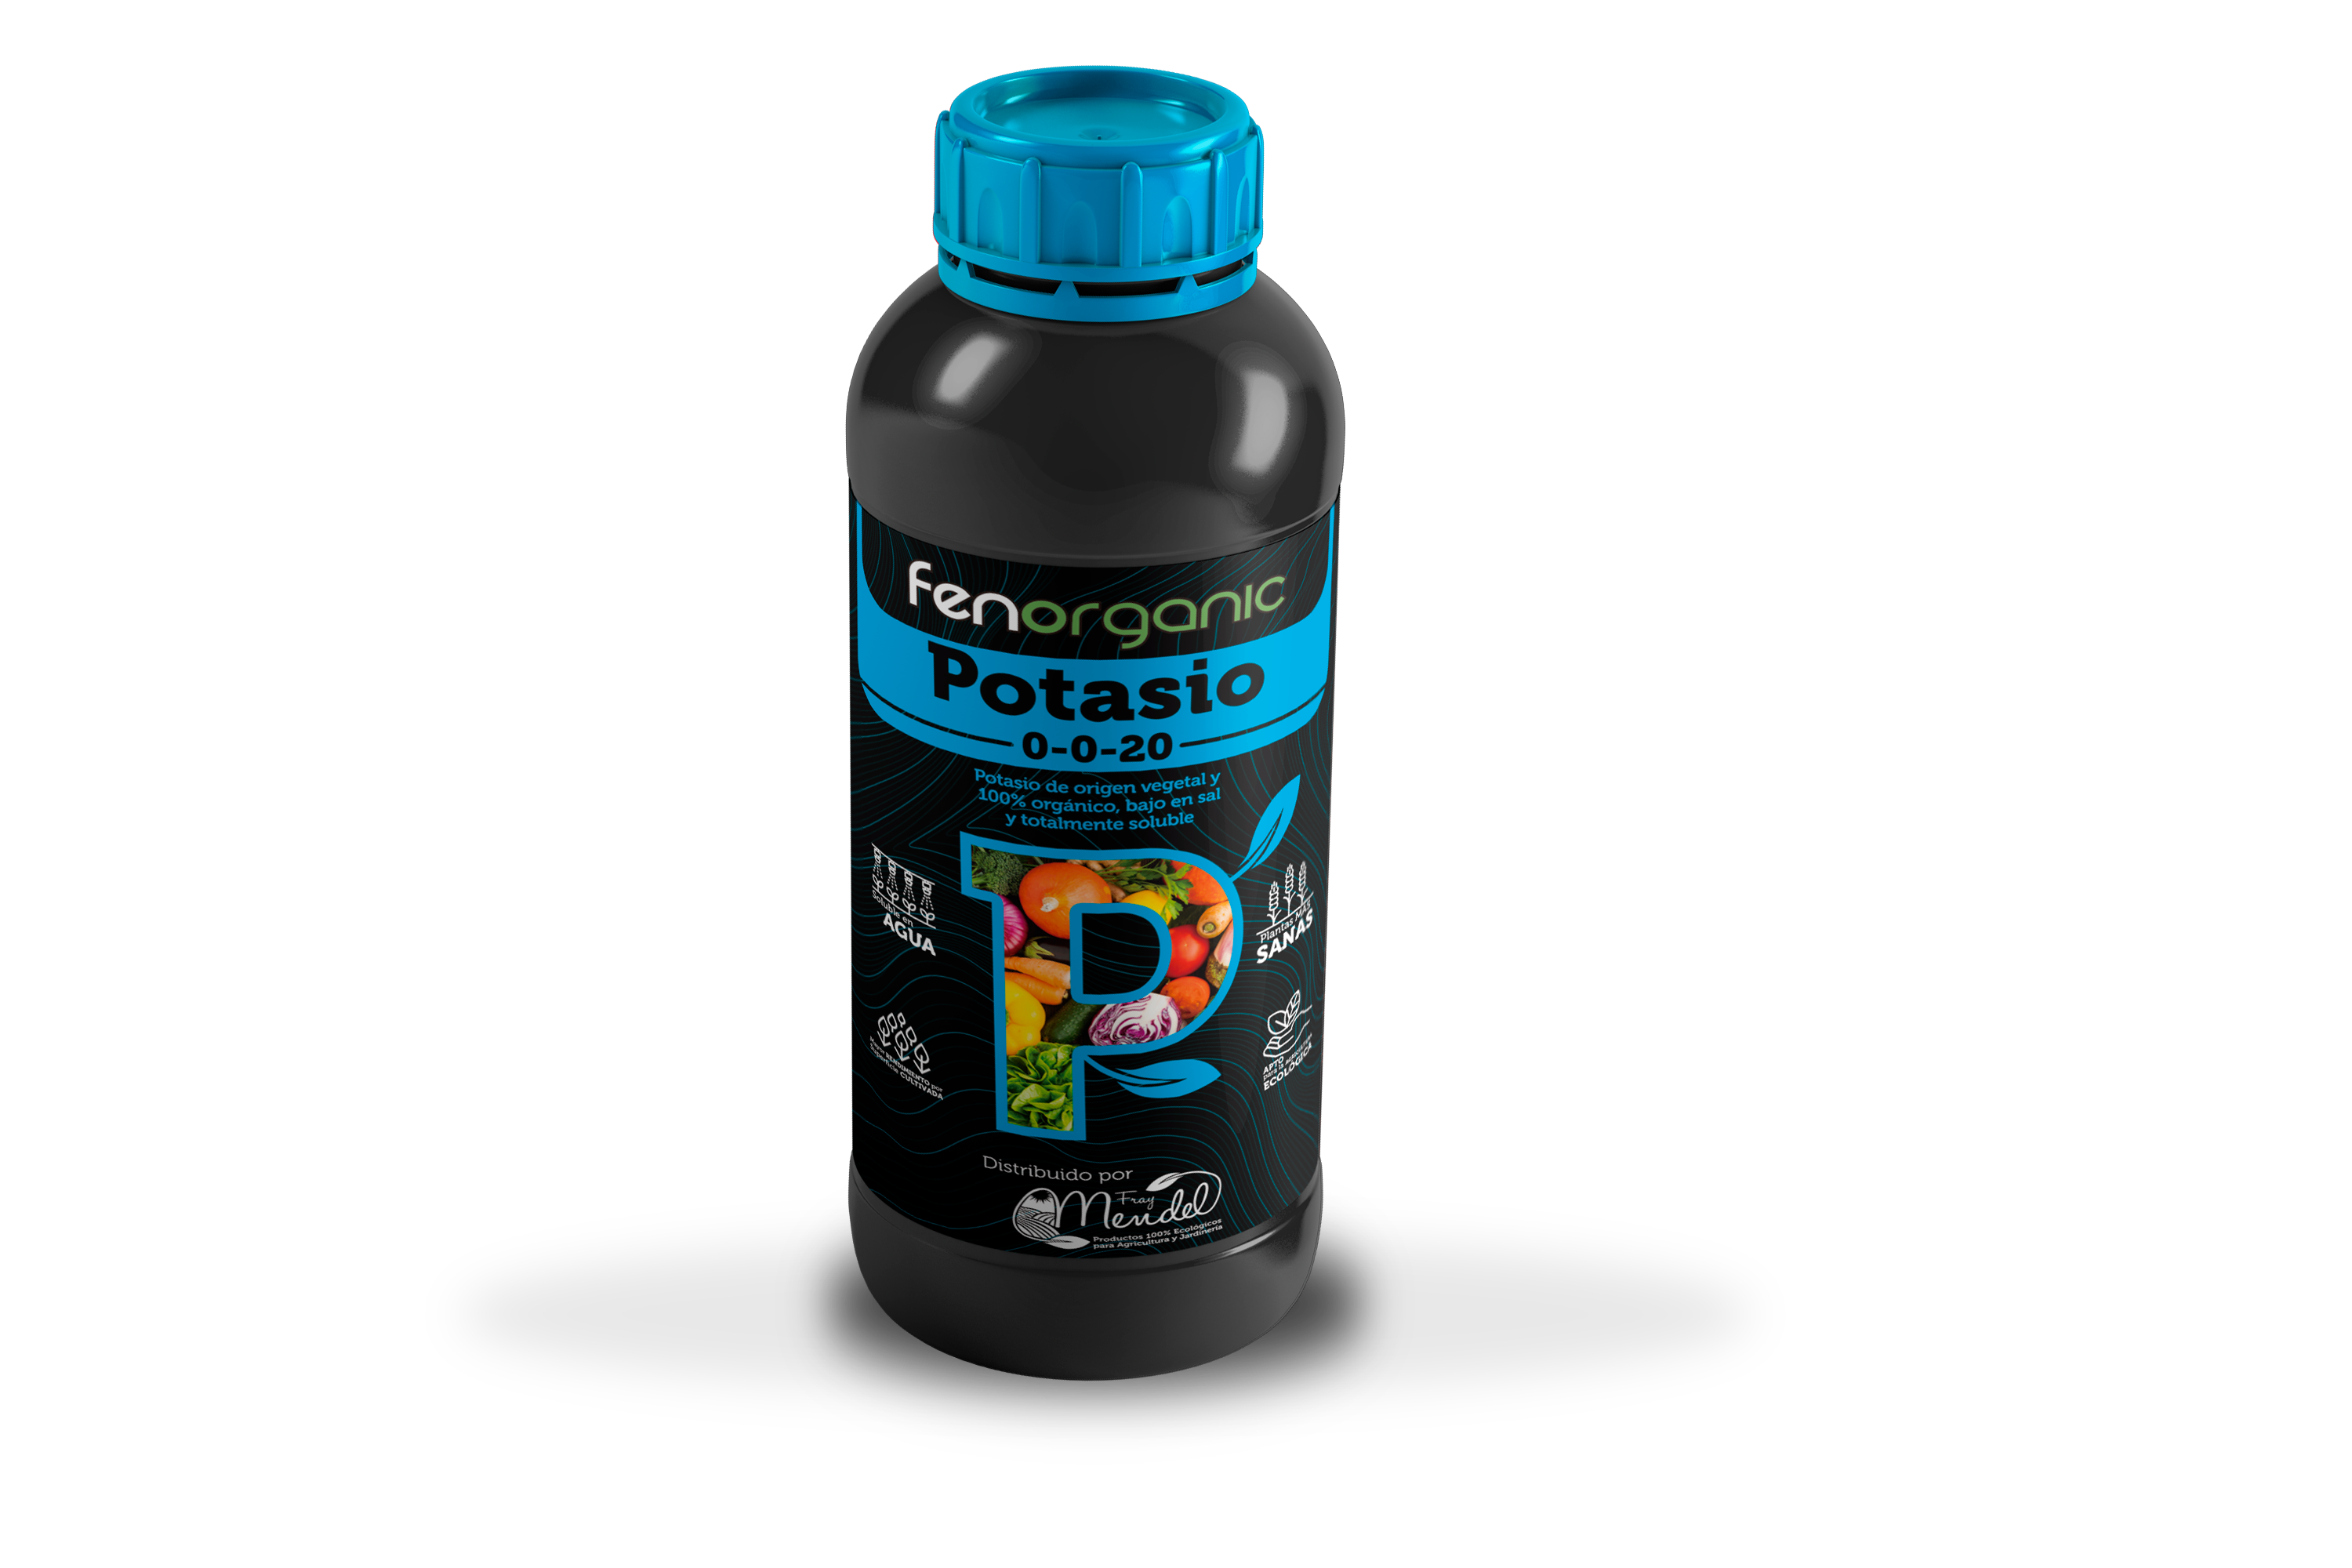 Fenorganic Potasio 0-0-20 - Fertilizante ecológico